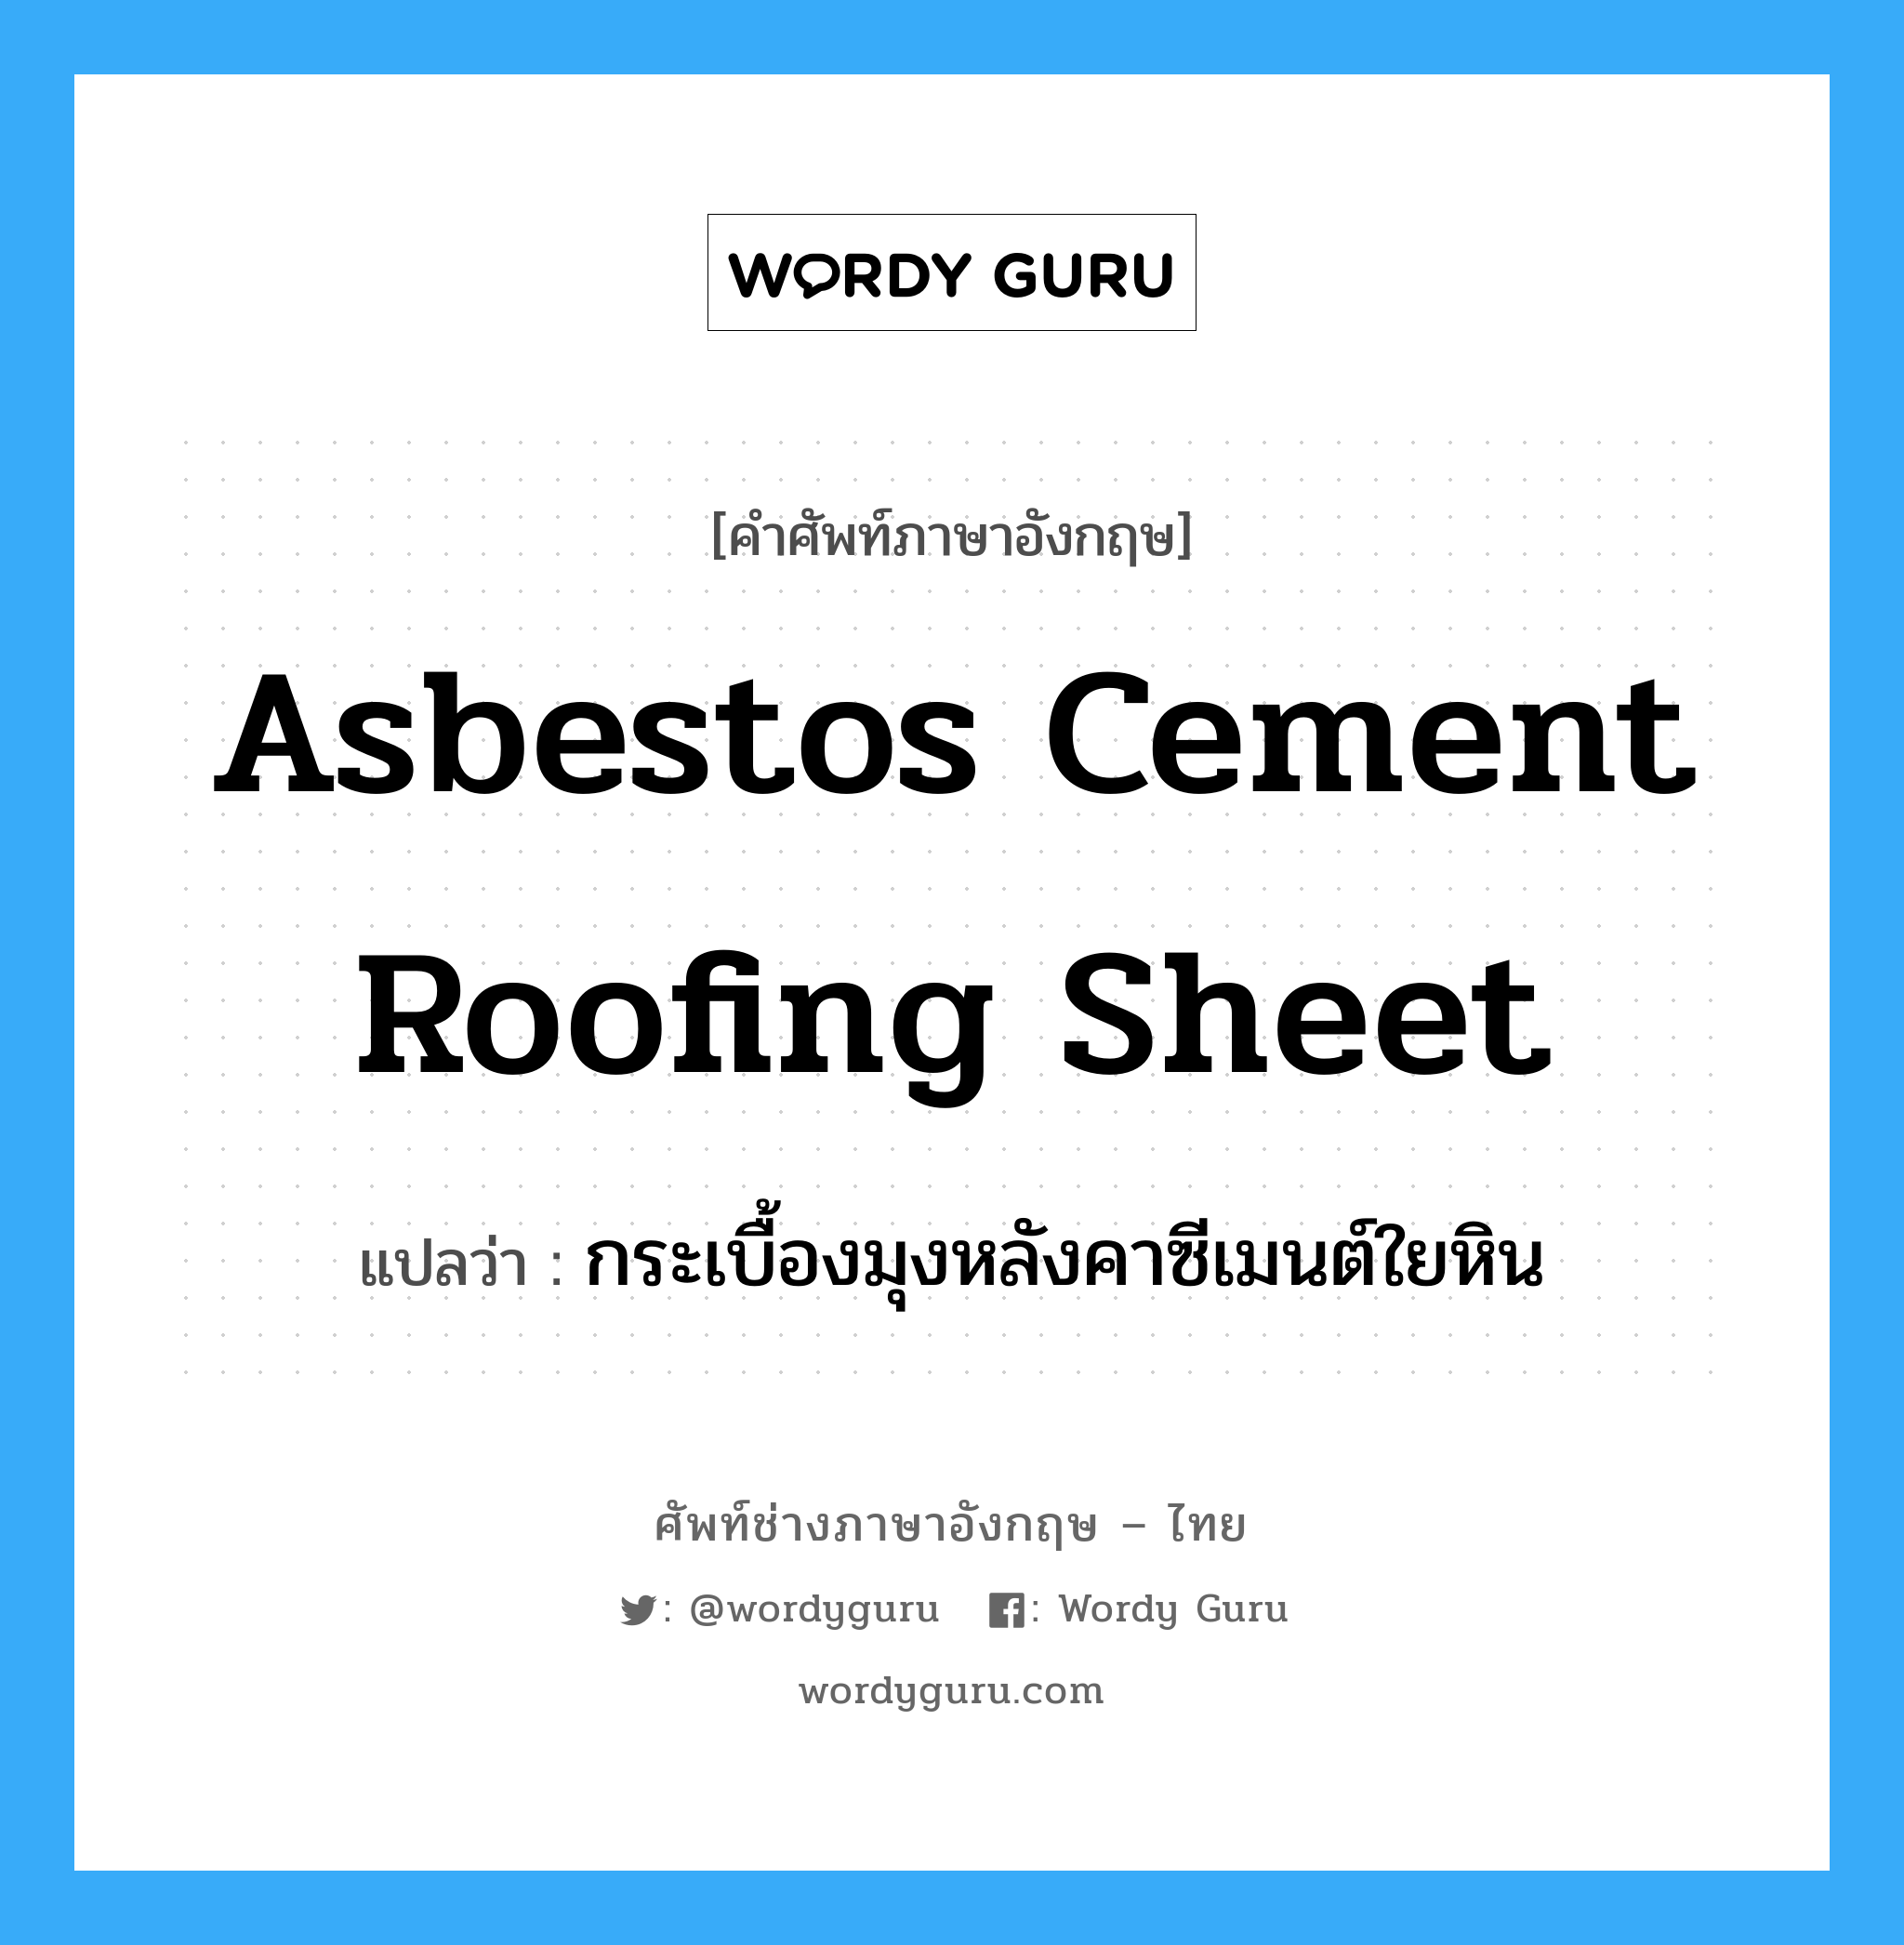 กระเบื้องมุงหลังคาซีเมนต์ใยหิน ภาษาอังกฤษ?, คำศัพท์ช่างภาษาอังกฤษ - ไทย กระเบื้องมุงหลังคาซีเมนต์ใยหิน คำศัพท์ภาษาอังกฤษ กระเบื้องมุงหลังคาซีเมนต์ใยหิน แปลว่า asbestos cement roofing sheet